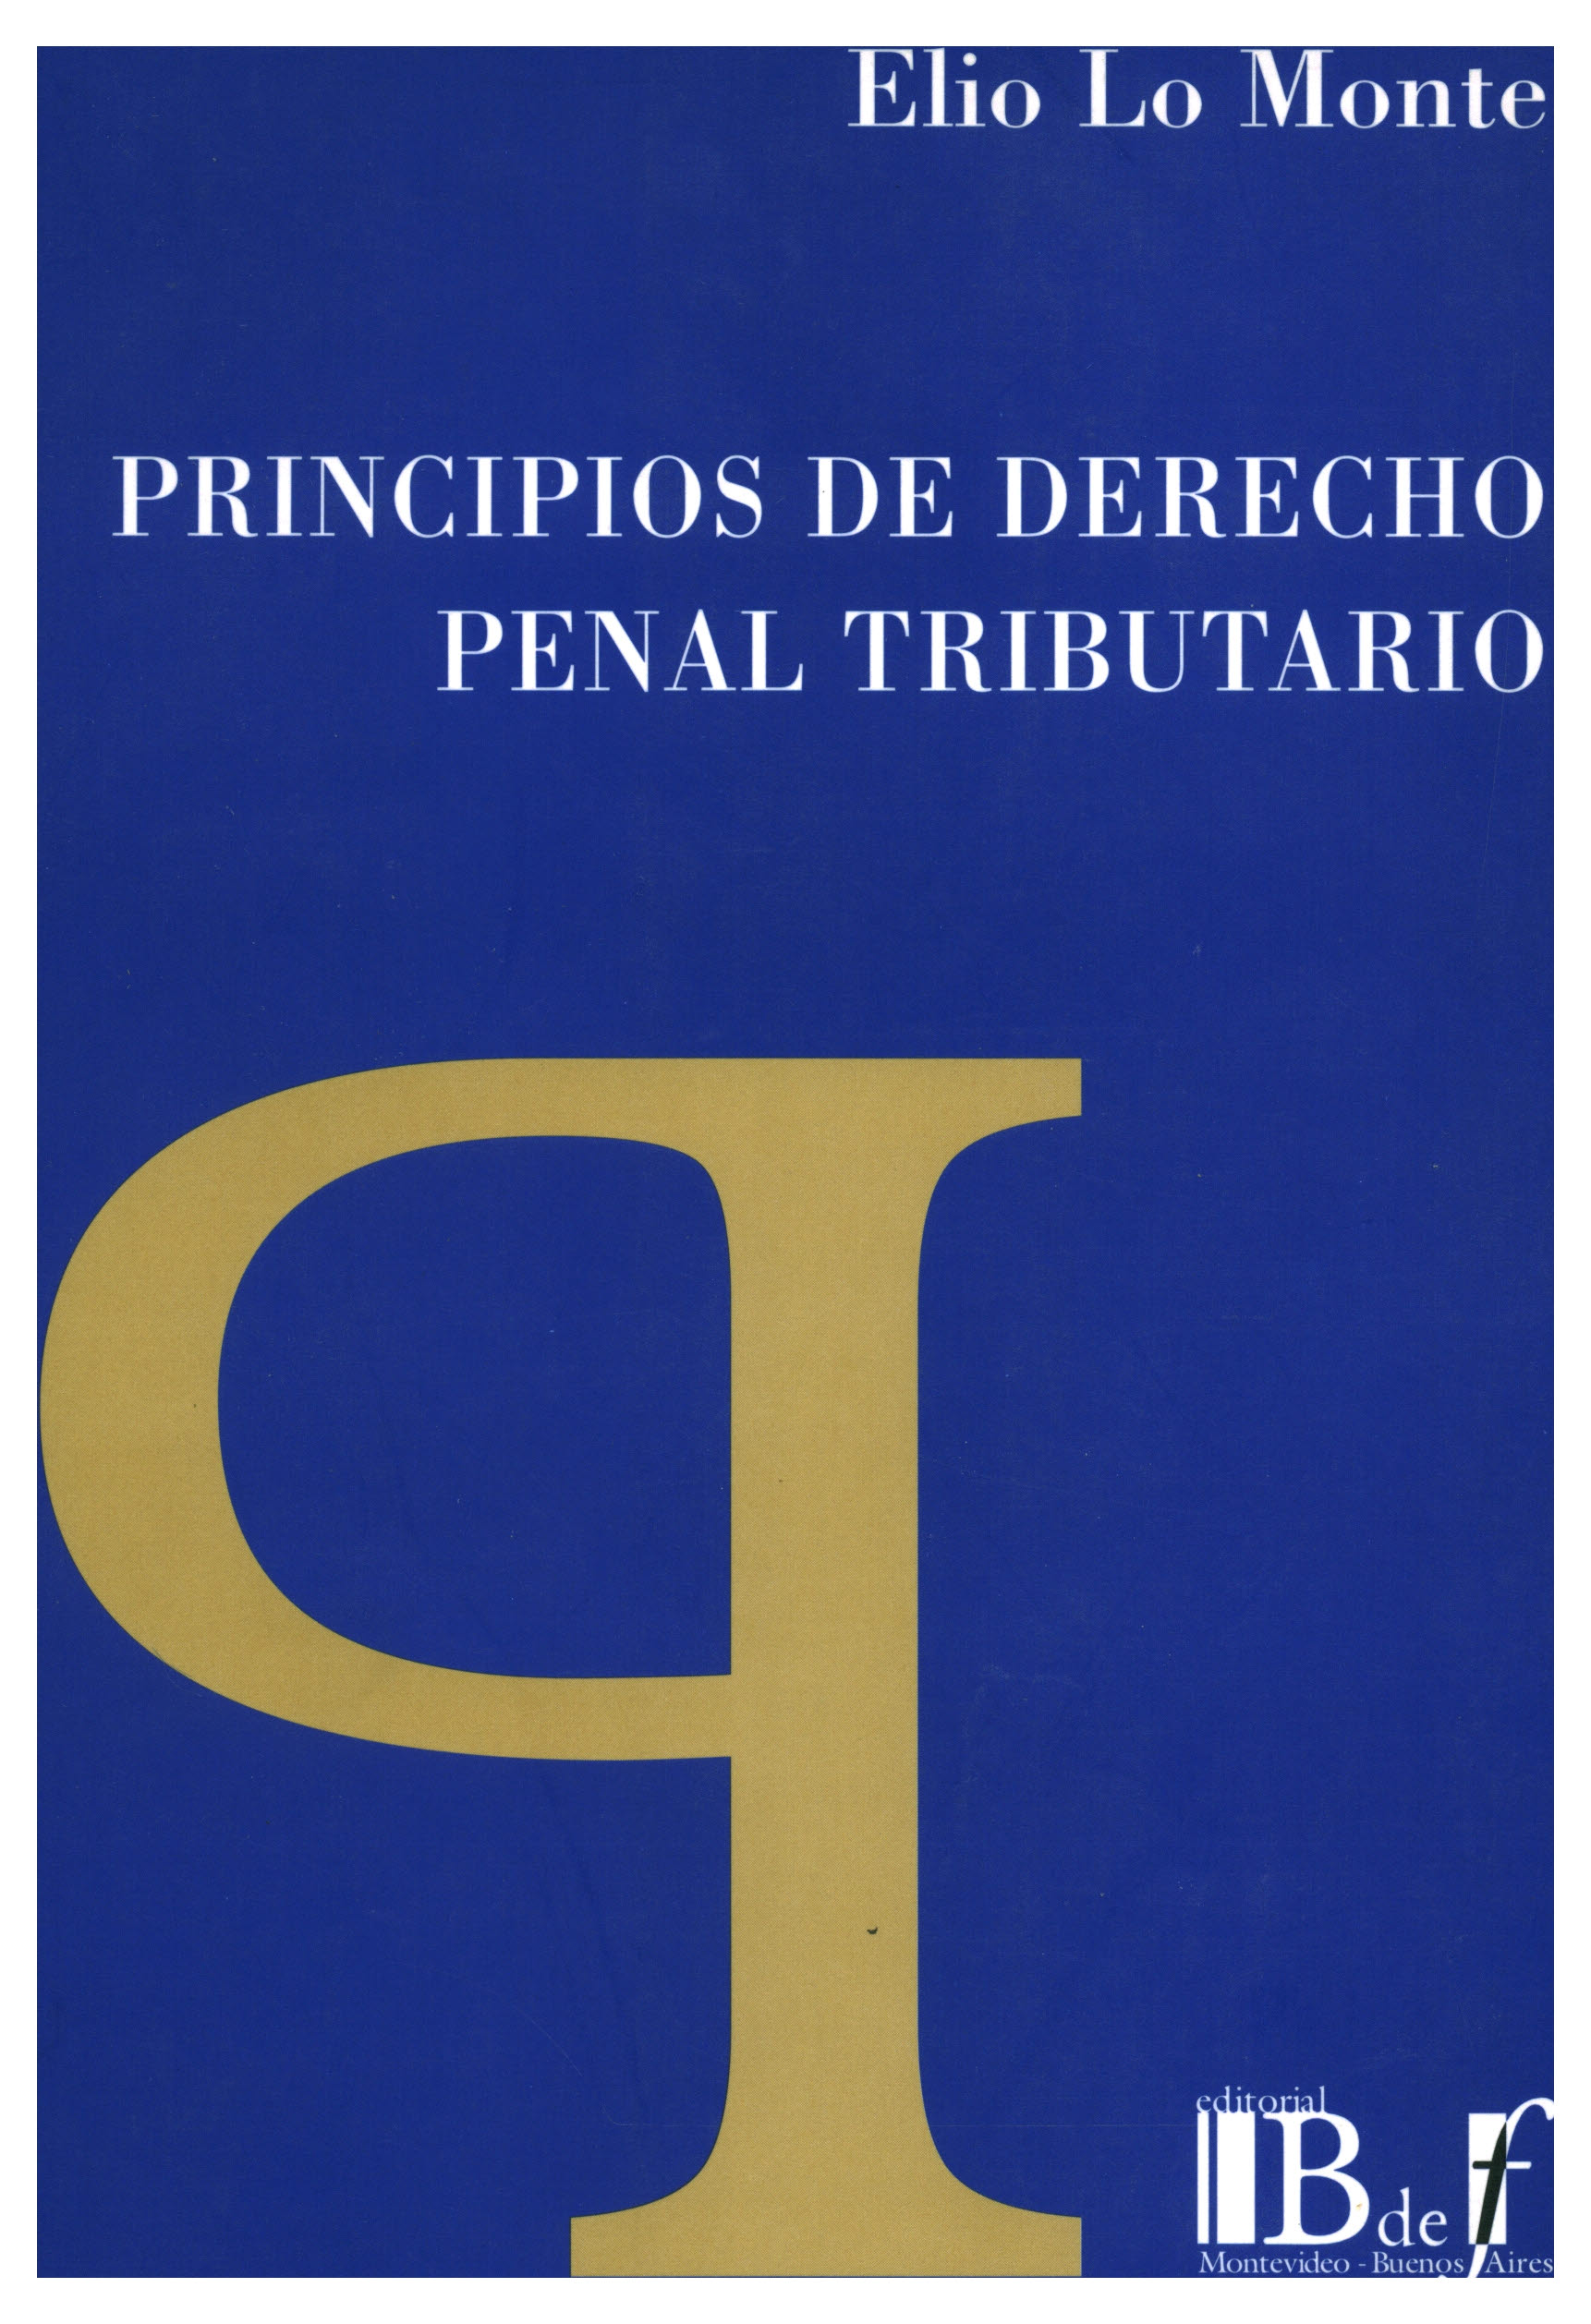 Principios de derecho penal tributario